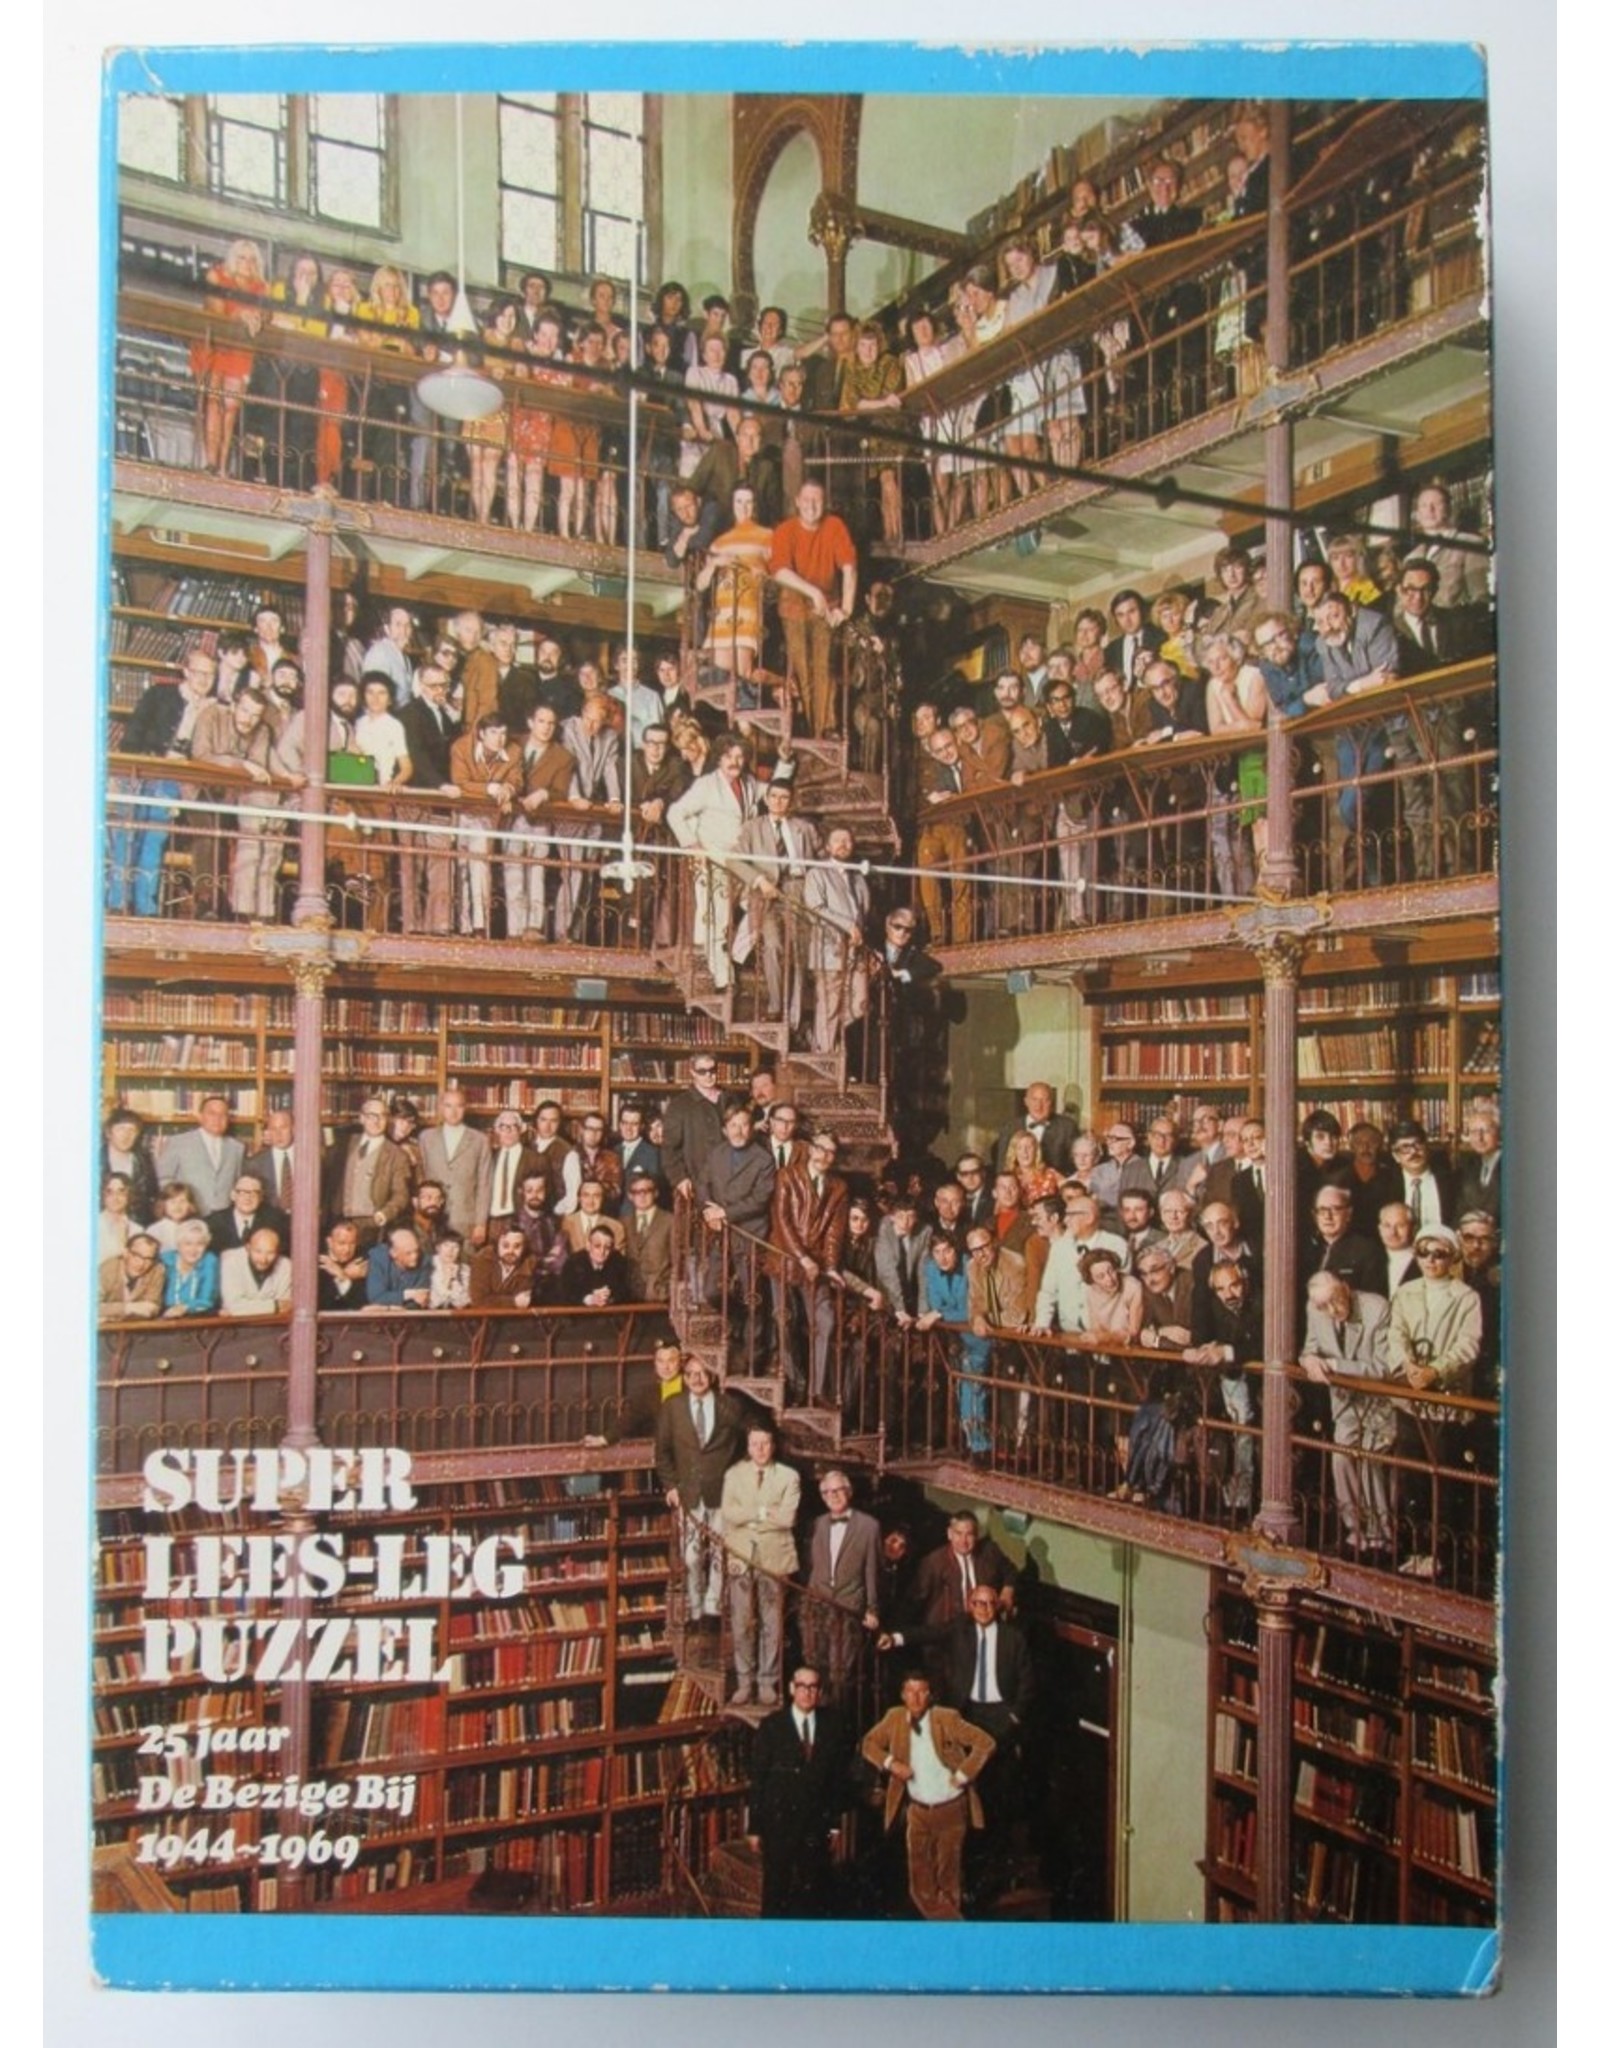 Paul Huf - Super Lees-Legpuzzel 25 Jaar De Bezige Bij 1944-1969